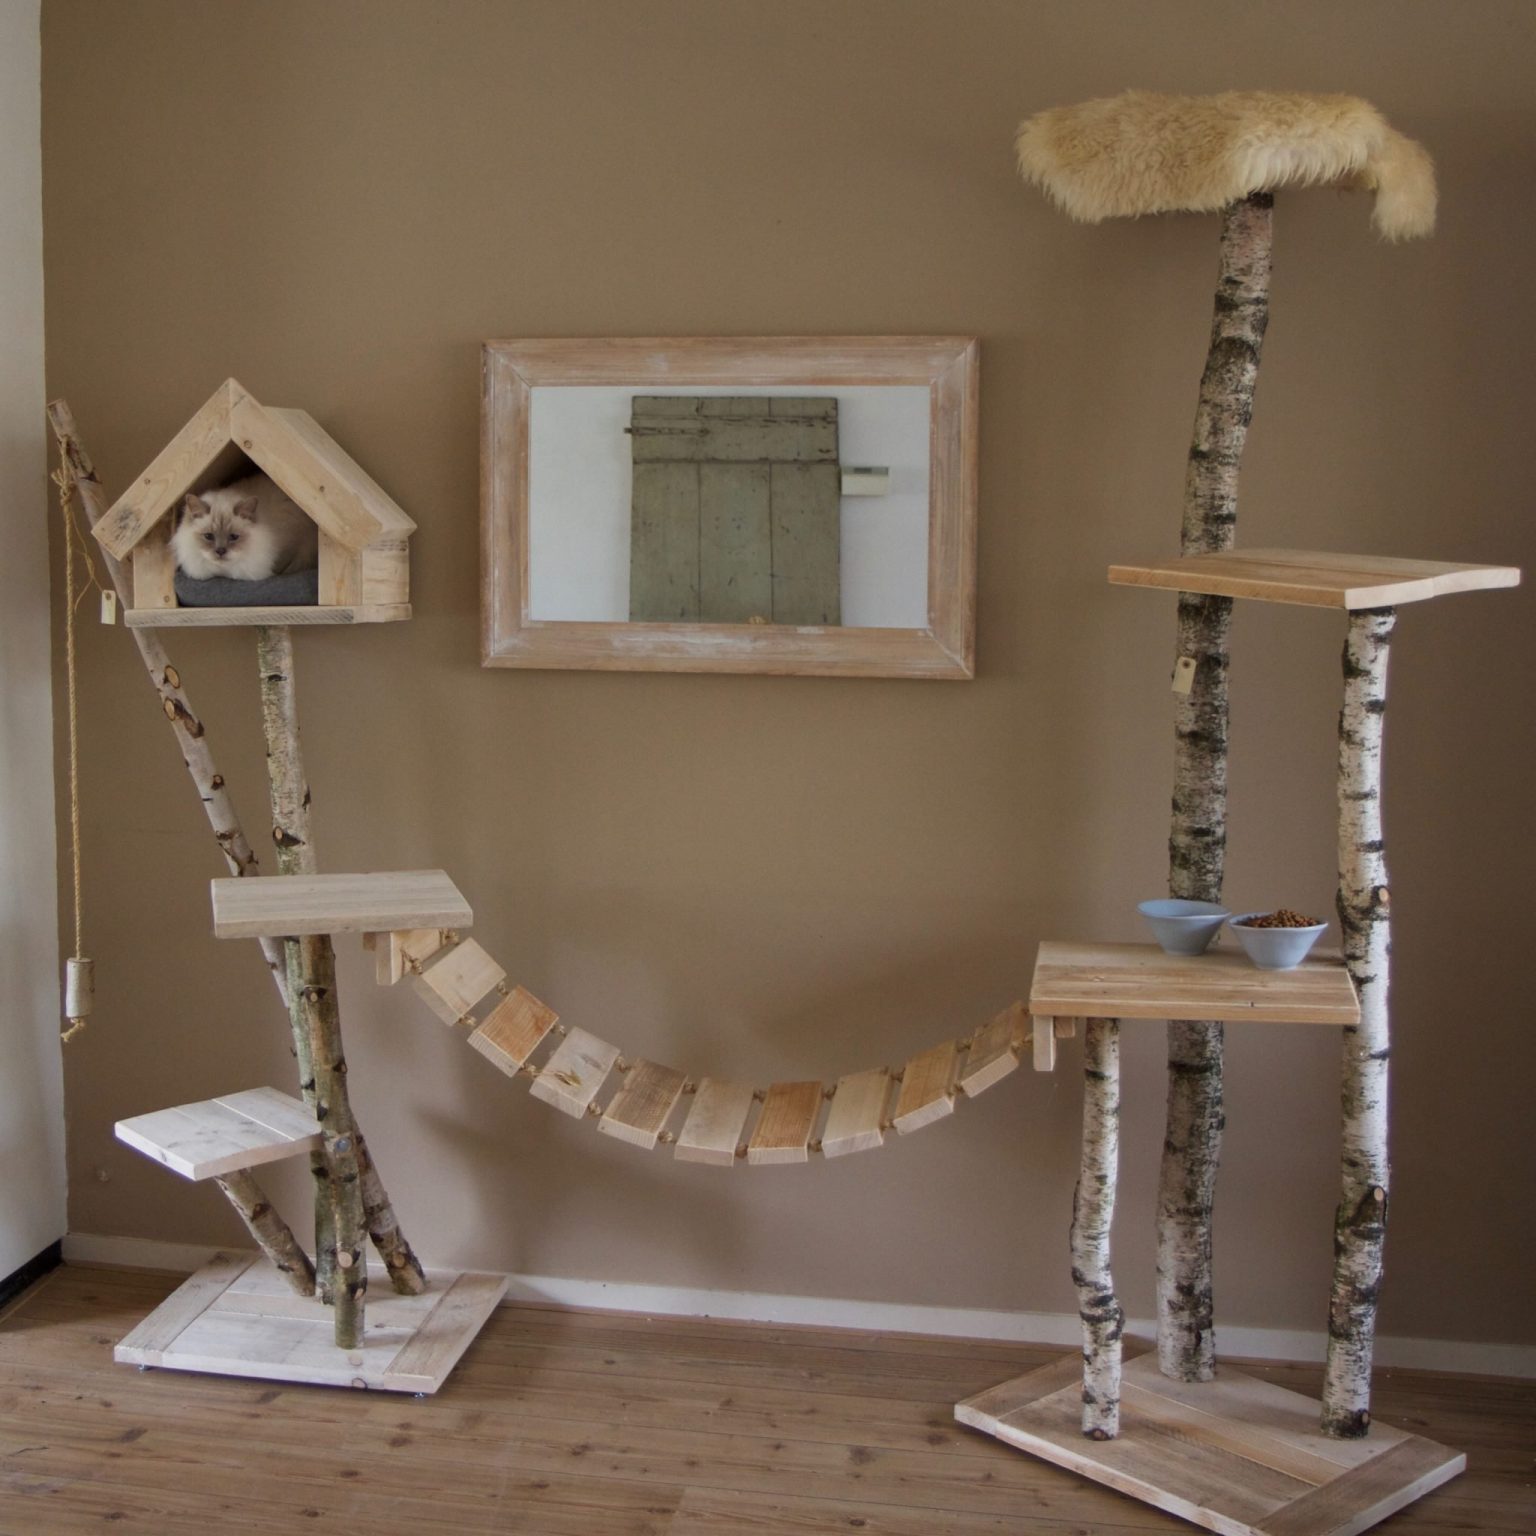 Overzicht van een aangeklede katten krabpaal gemaakt van steigerhout en katten burg.